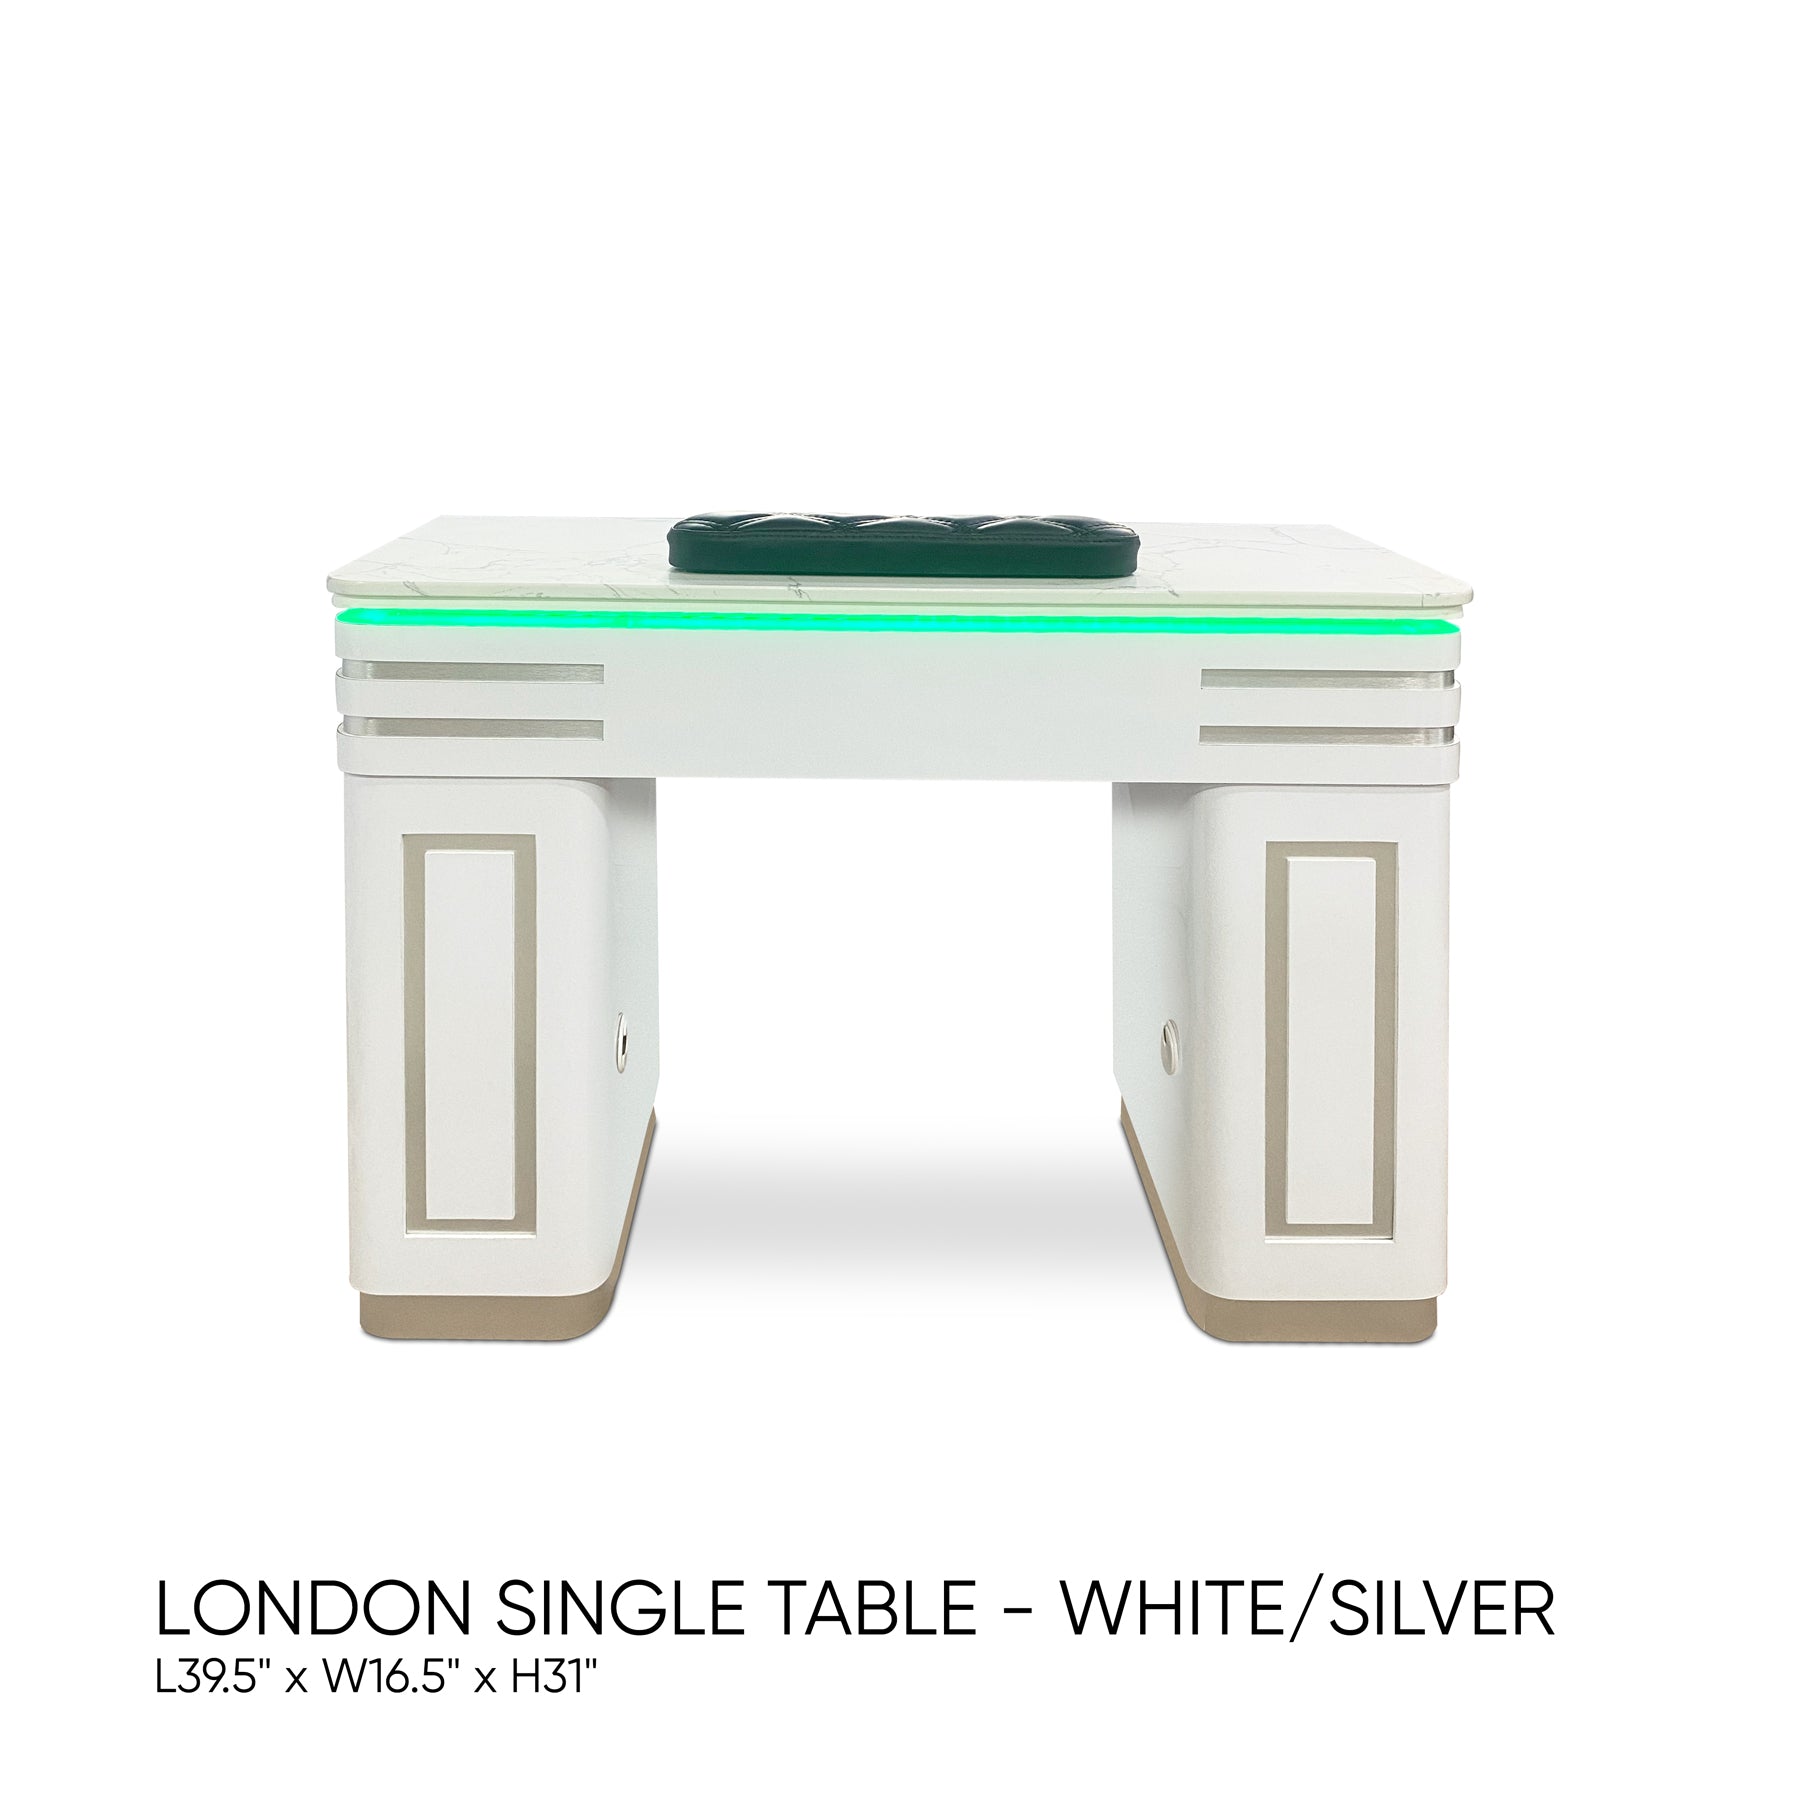 London Single Table - White/Silver